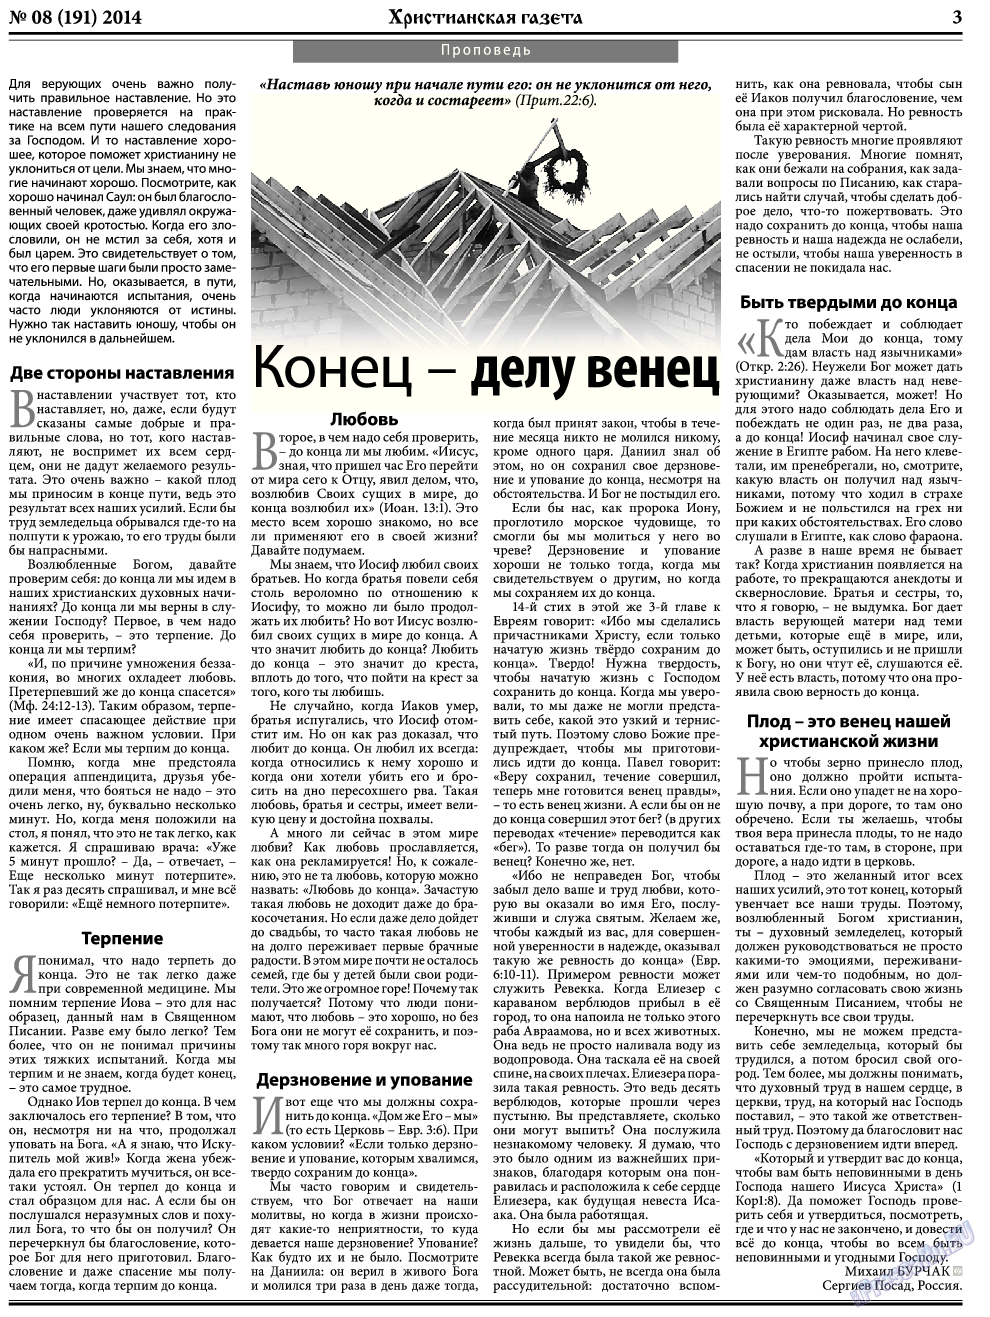 Христианская газета, газета. 2014 №8 стр.3